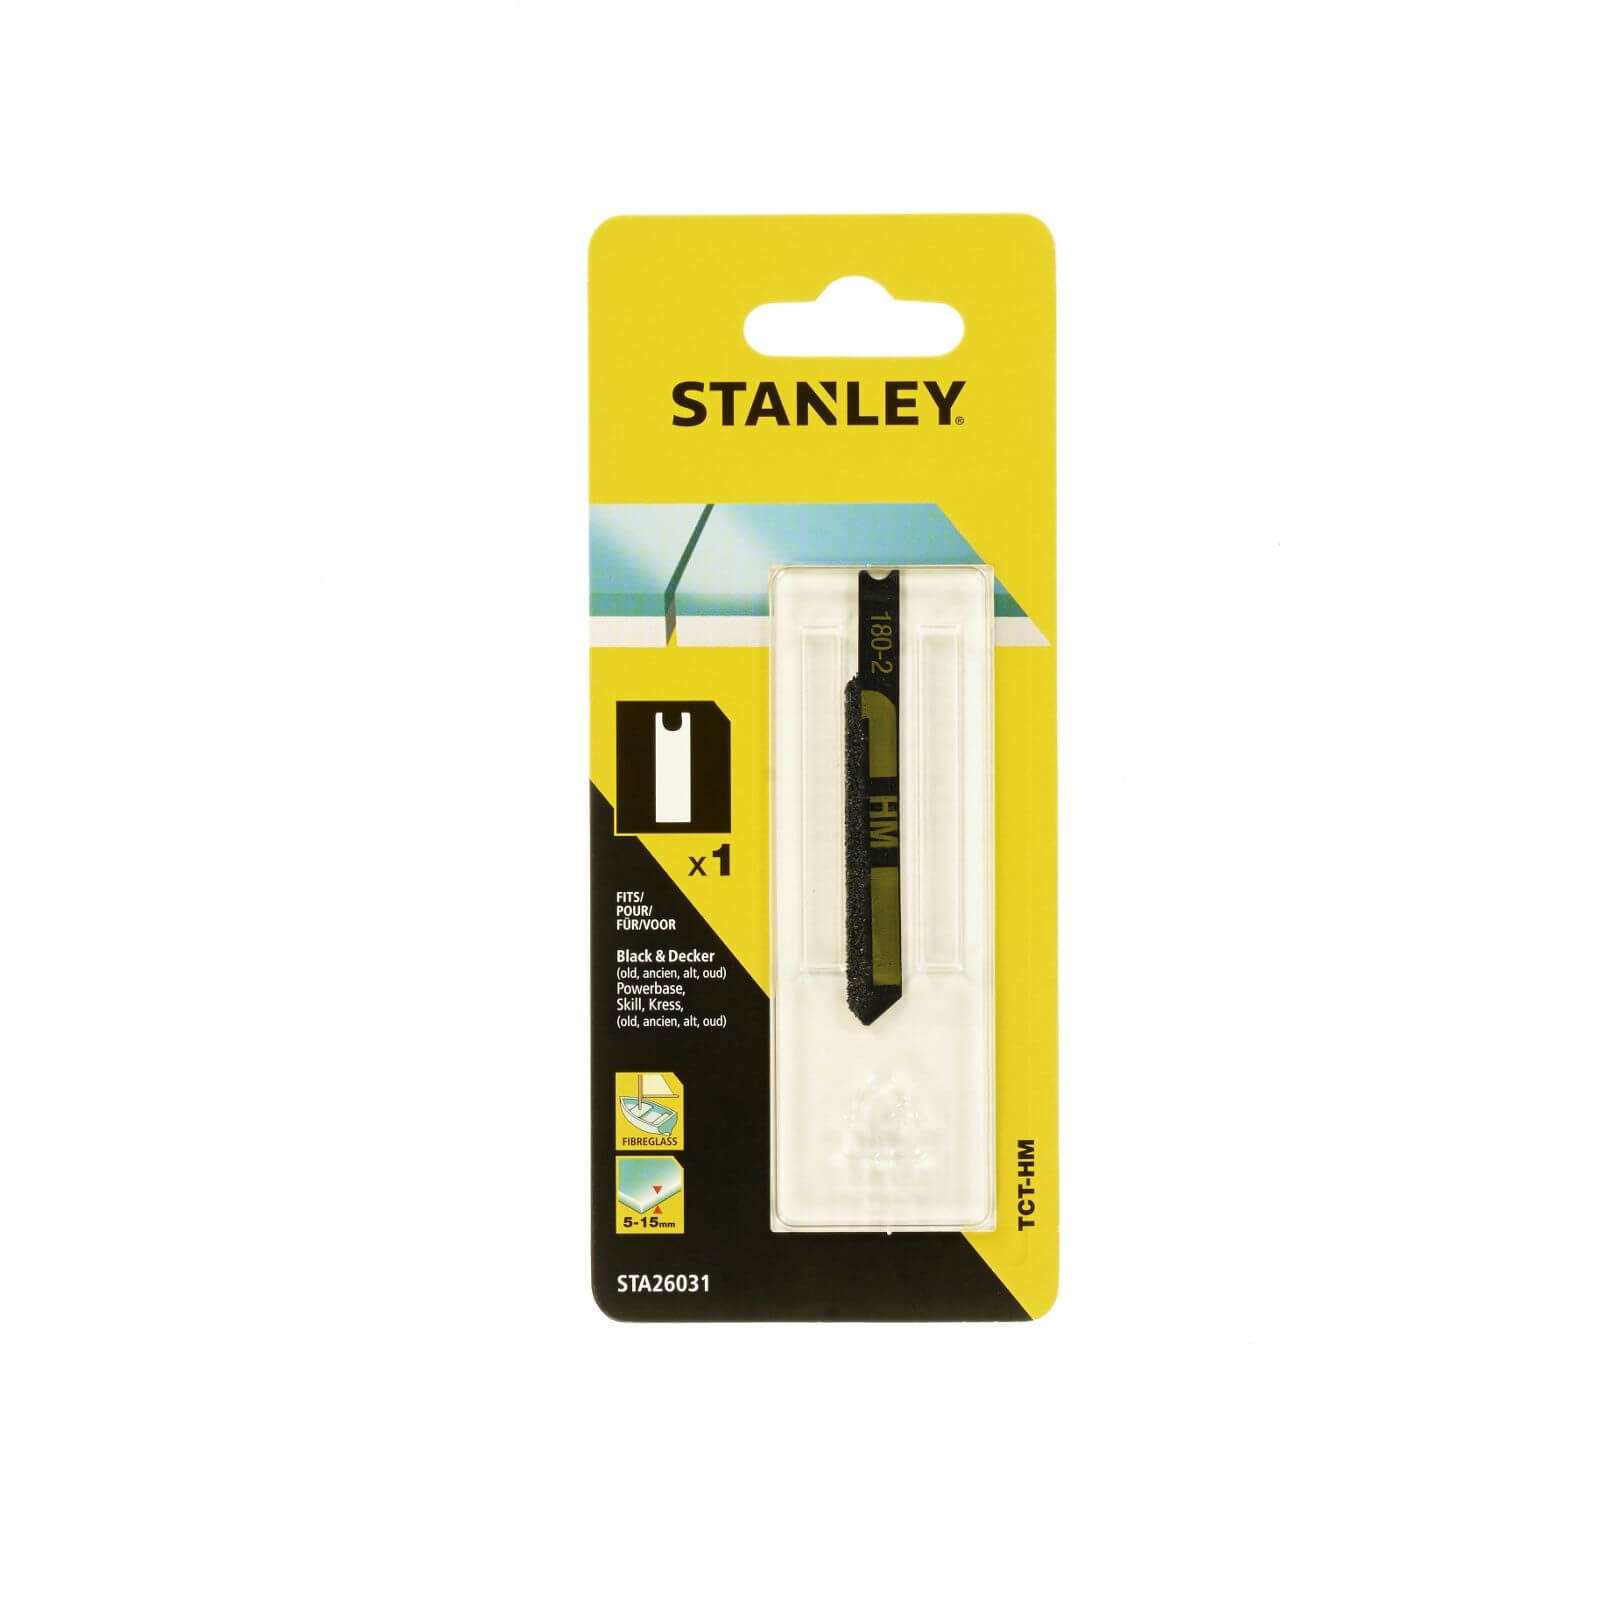 Photo of Stanley Jigsaw Blade Ceramic U-shank - Sta26031-xj